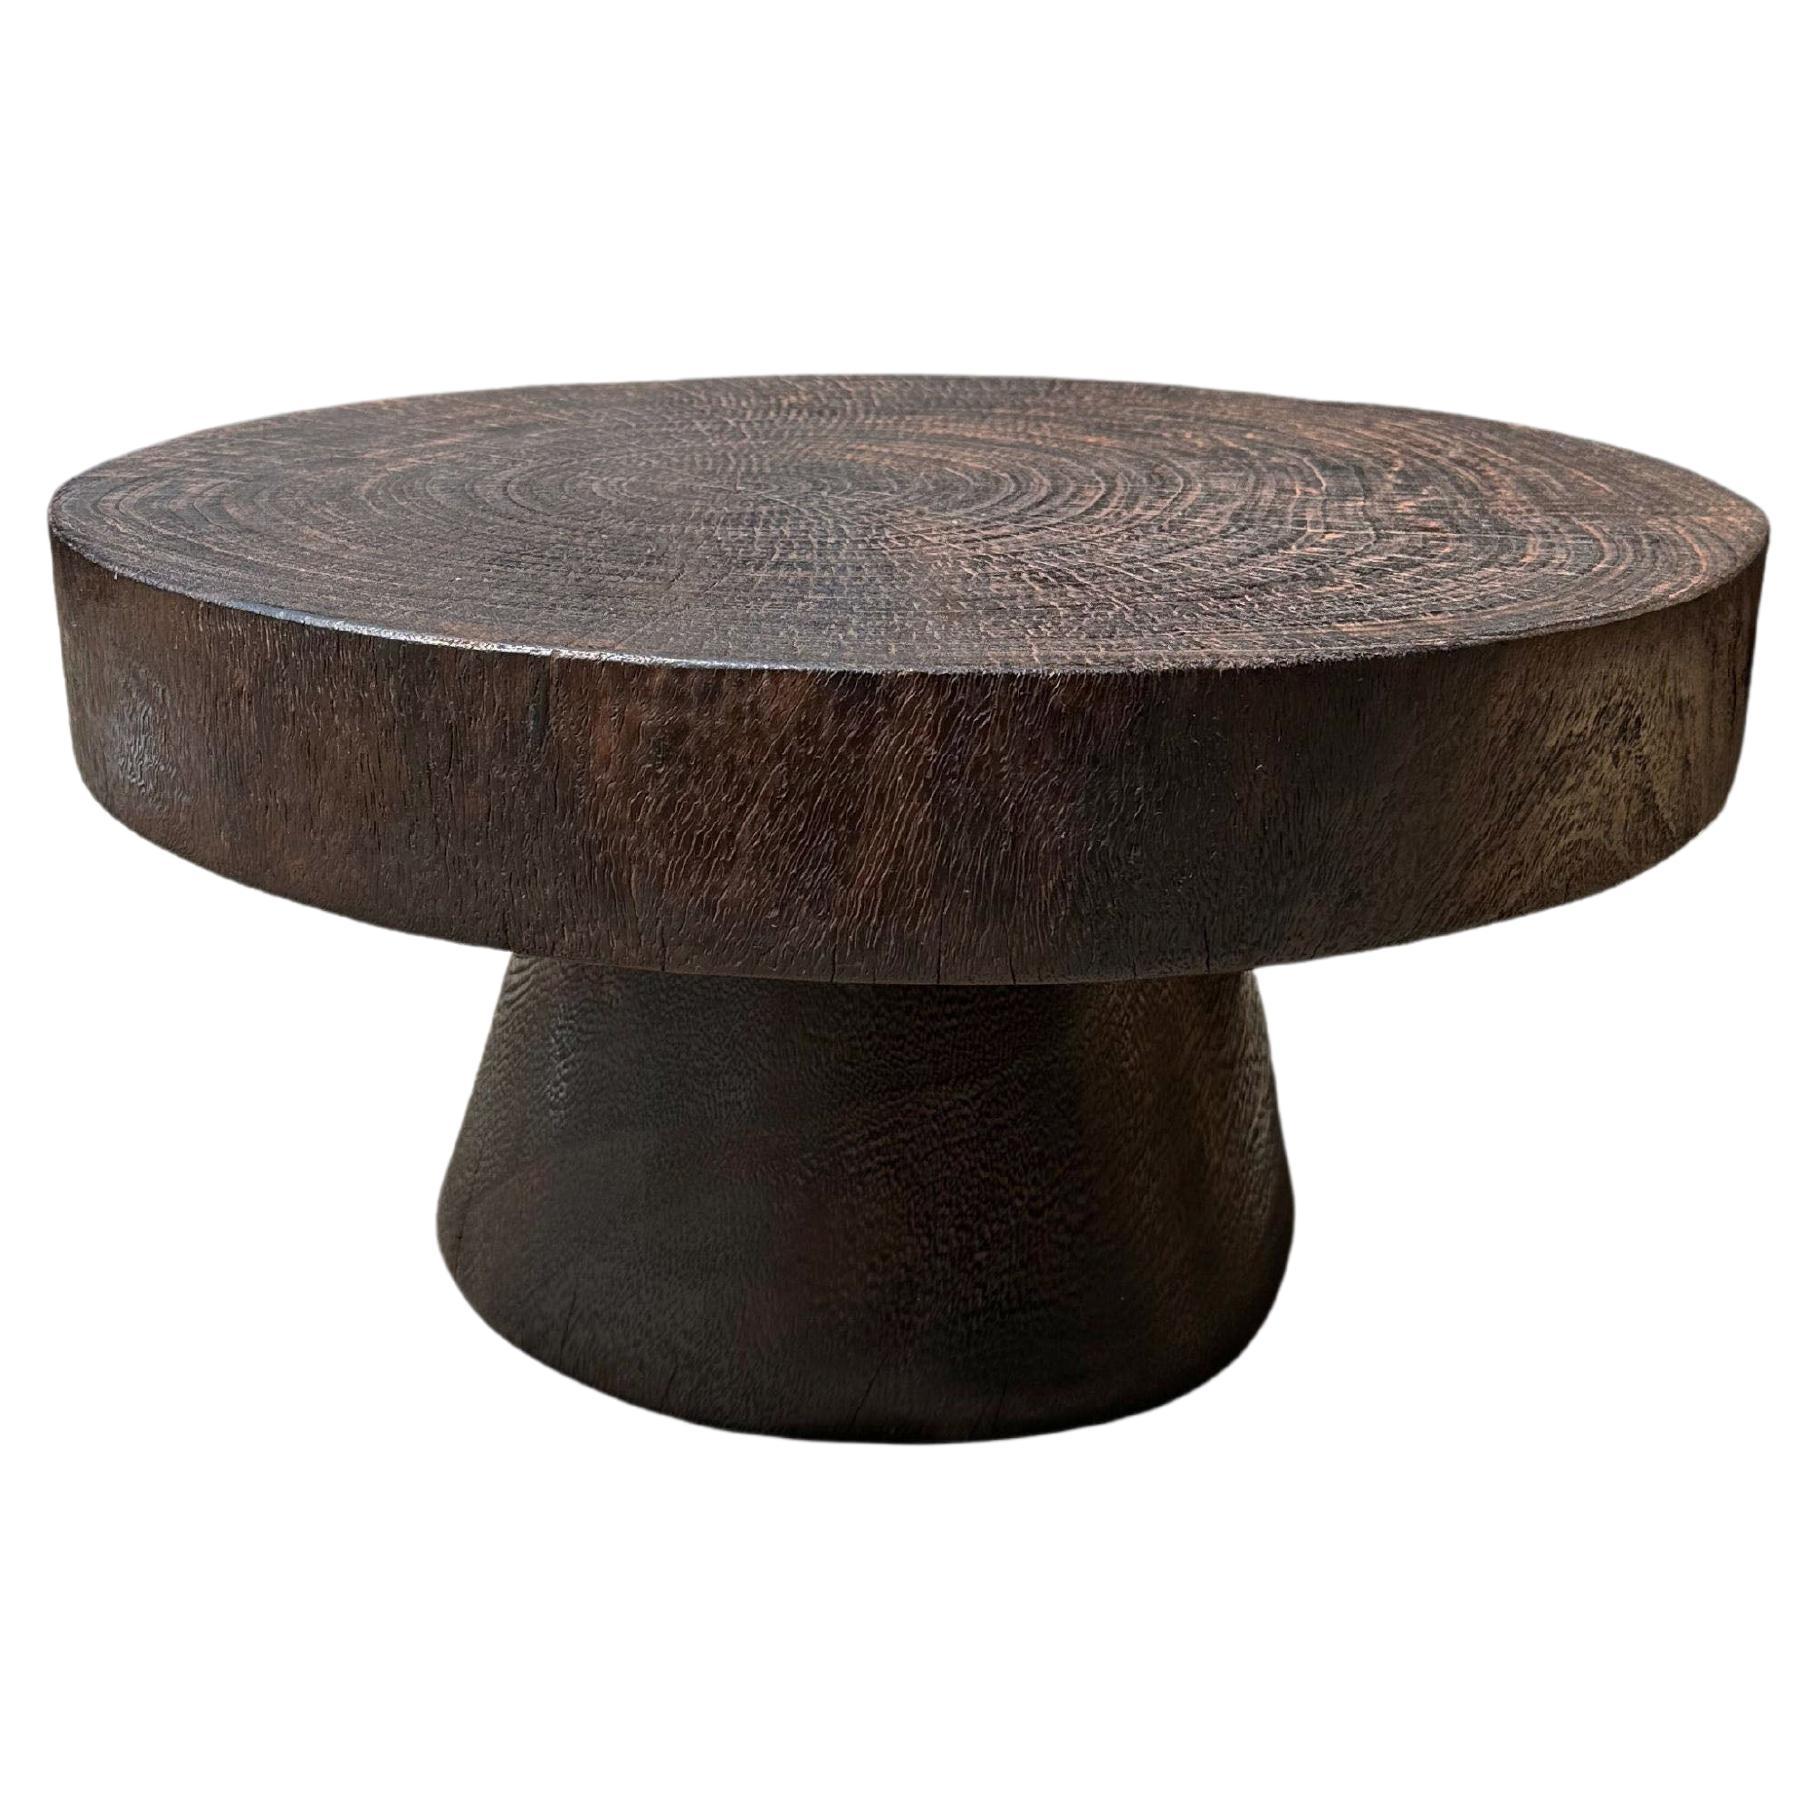 Table ronde sculpturale fabriquée en bois de poirier massif, finition naturelle